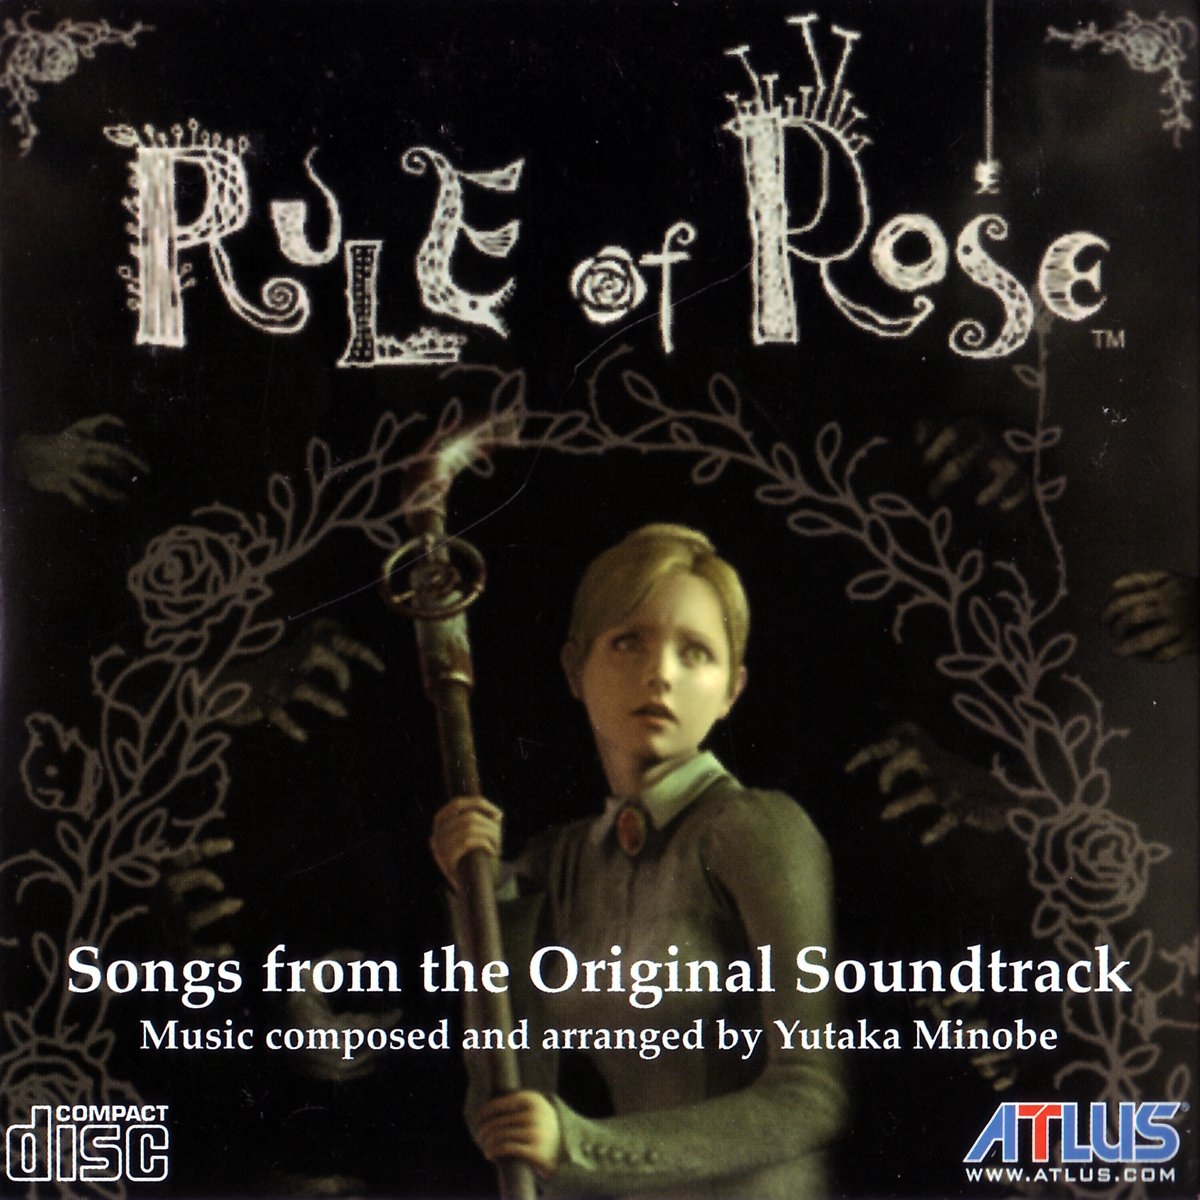 Rule of Rose | Rule of Rose Wiki | Fandom